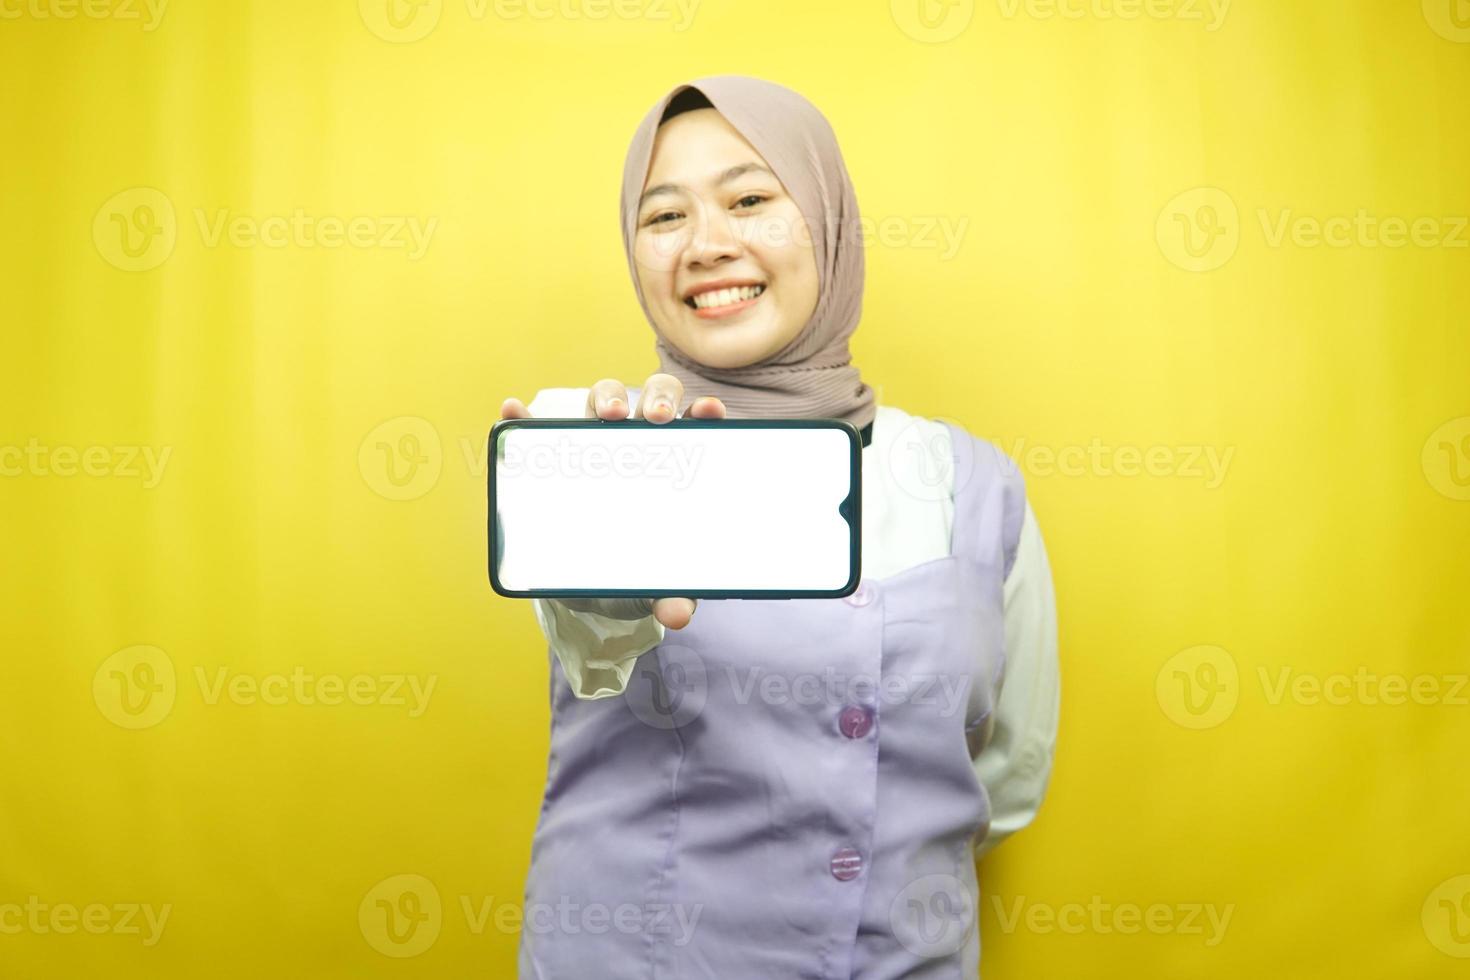 Hermosa joven musulmana asiática sonriendo confiada, entusiasta y alegre con las manos sosteniendo el teléfono inteligente, promoviendo la aplicación, promoviendo el juego, aislado sobre fondo amarillo, concepto publicitario foto